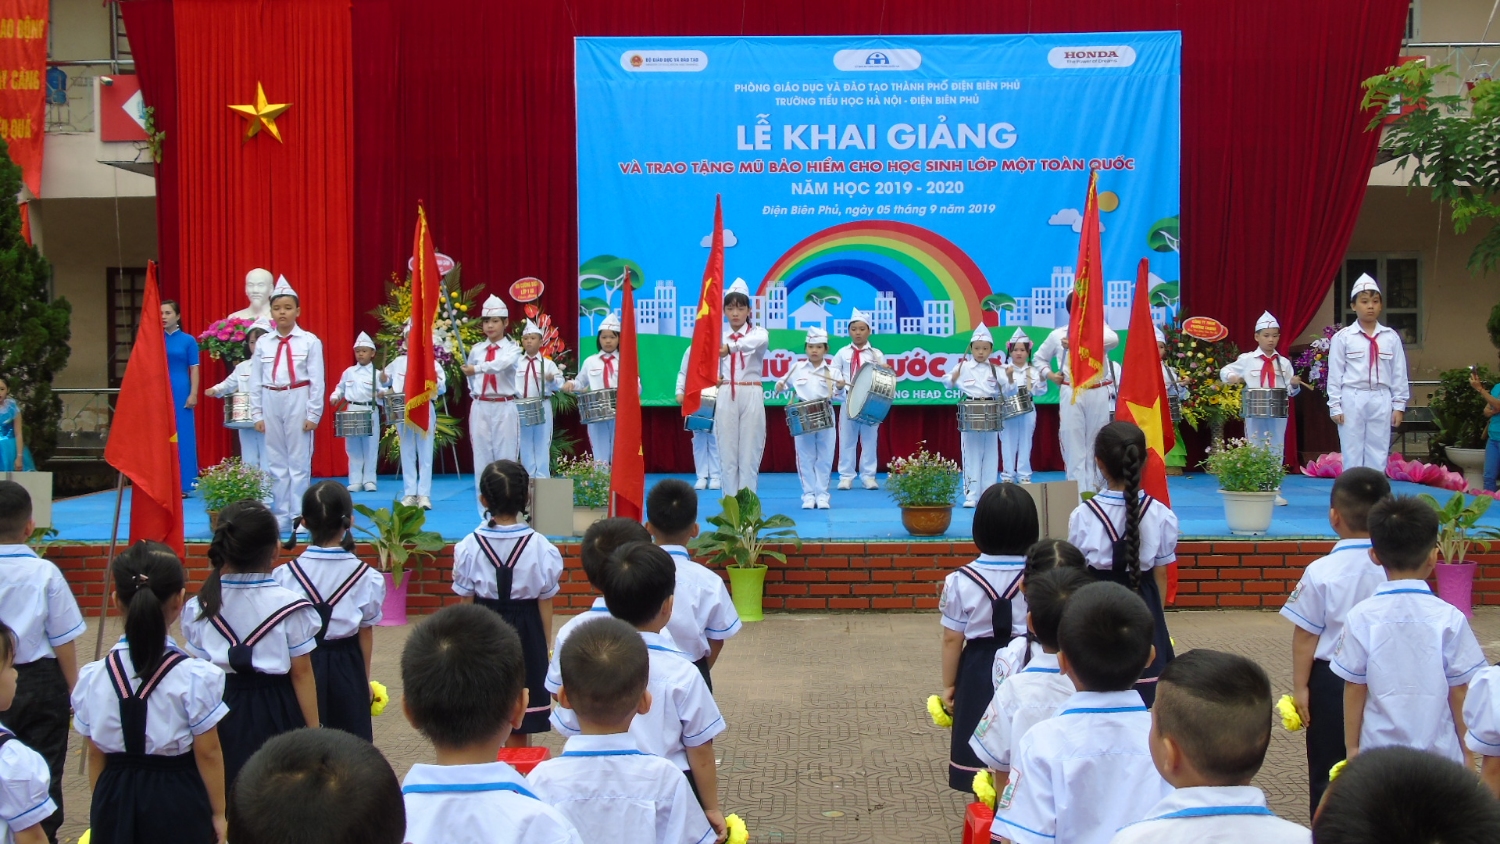 Trường Tiểu học Hà Nội - Điện Biên Phủ tổ chức khai giảng năm học 2019 - 2020 và công ty Honda Việt Nam trao tặng mũ bảo hiểm cho cho 260 em học sinh lớp 1 nhân ngày khai trường.